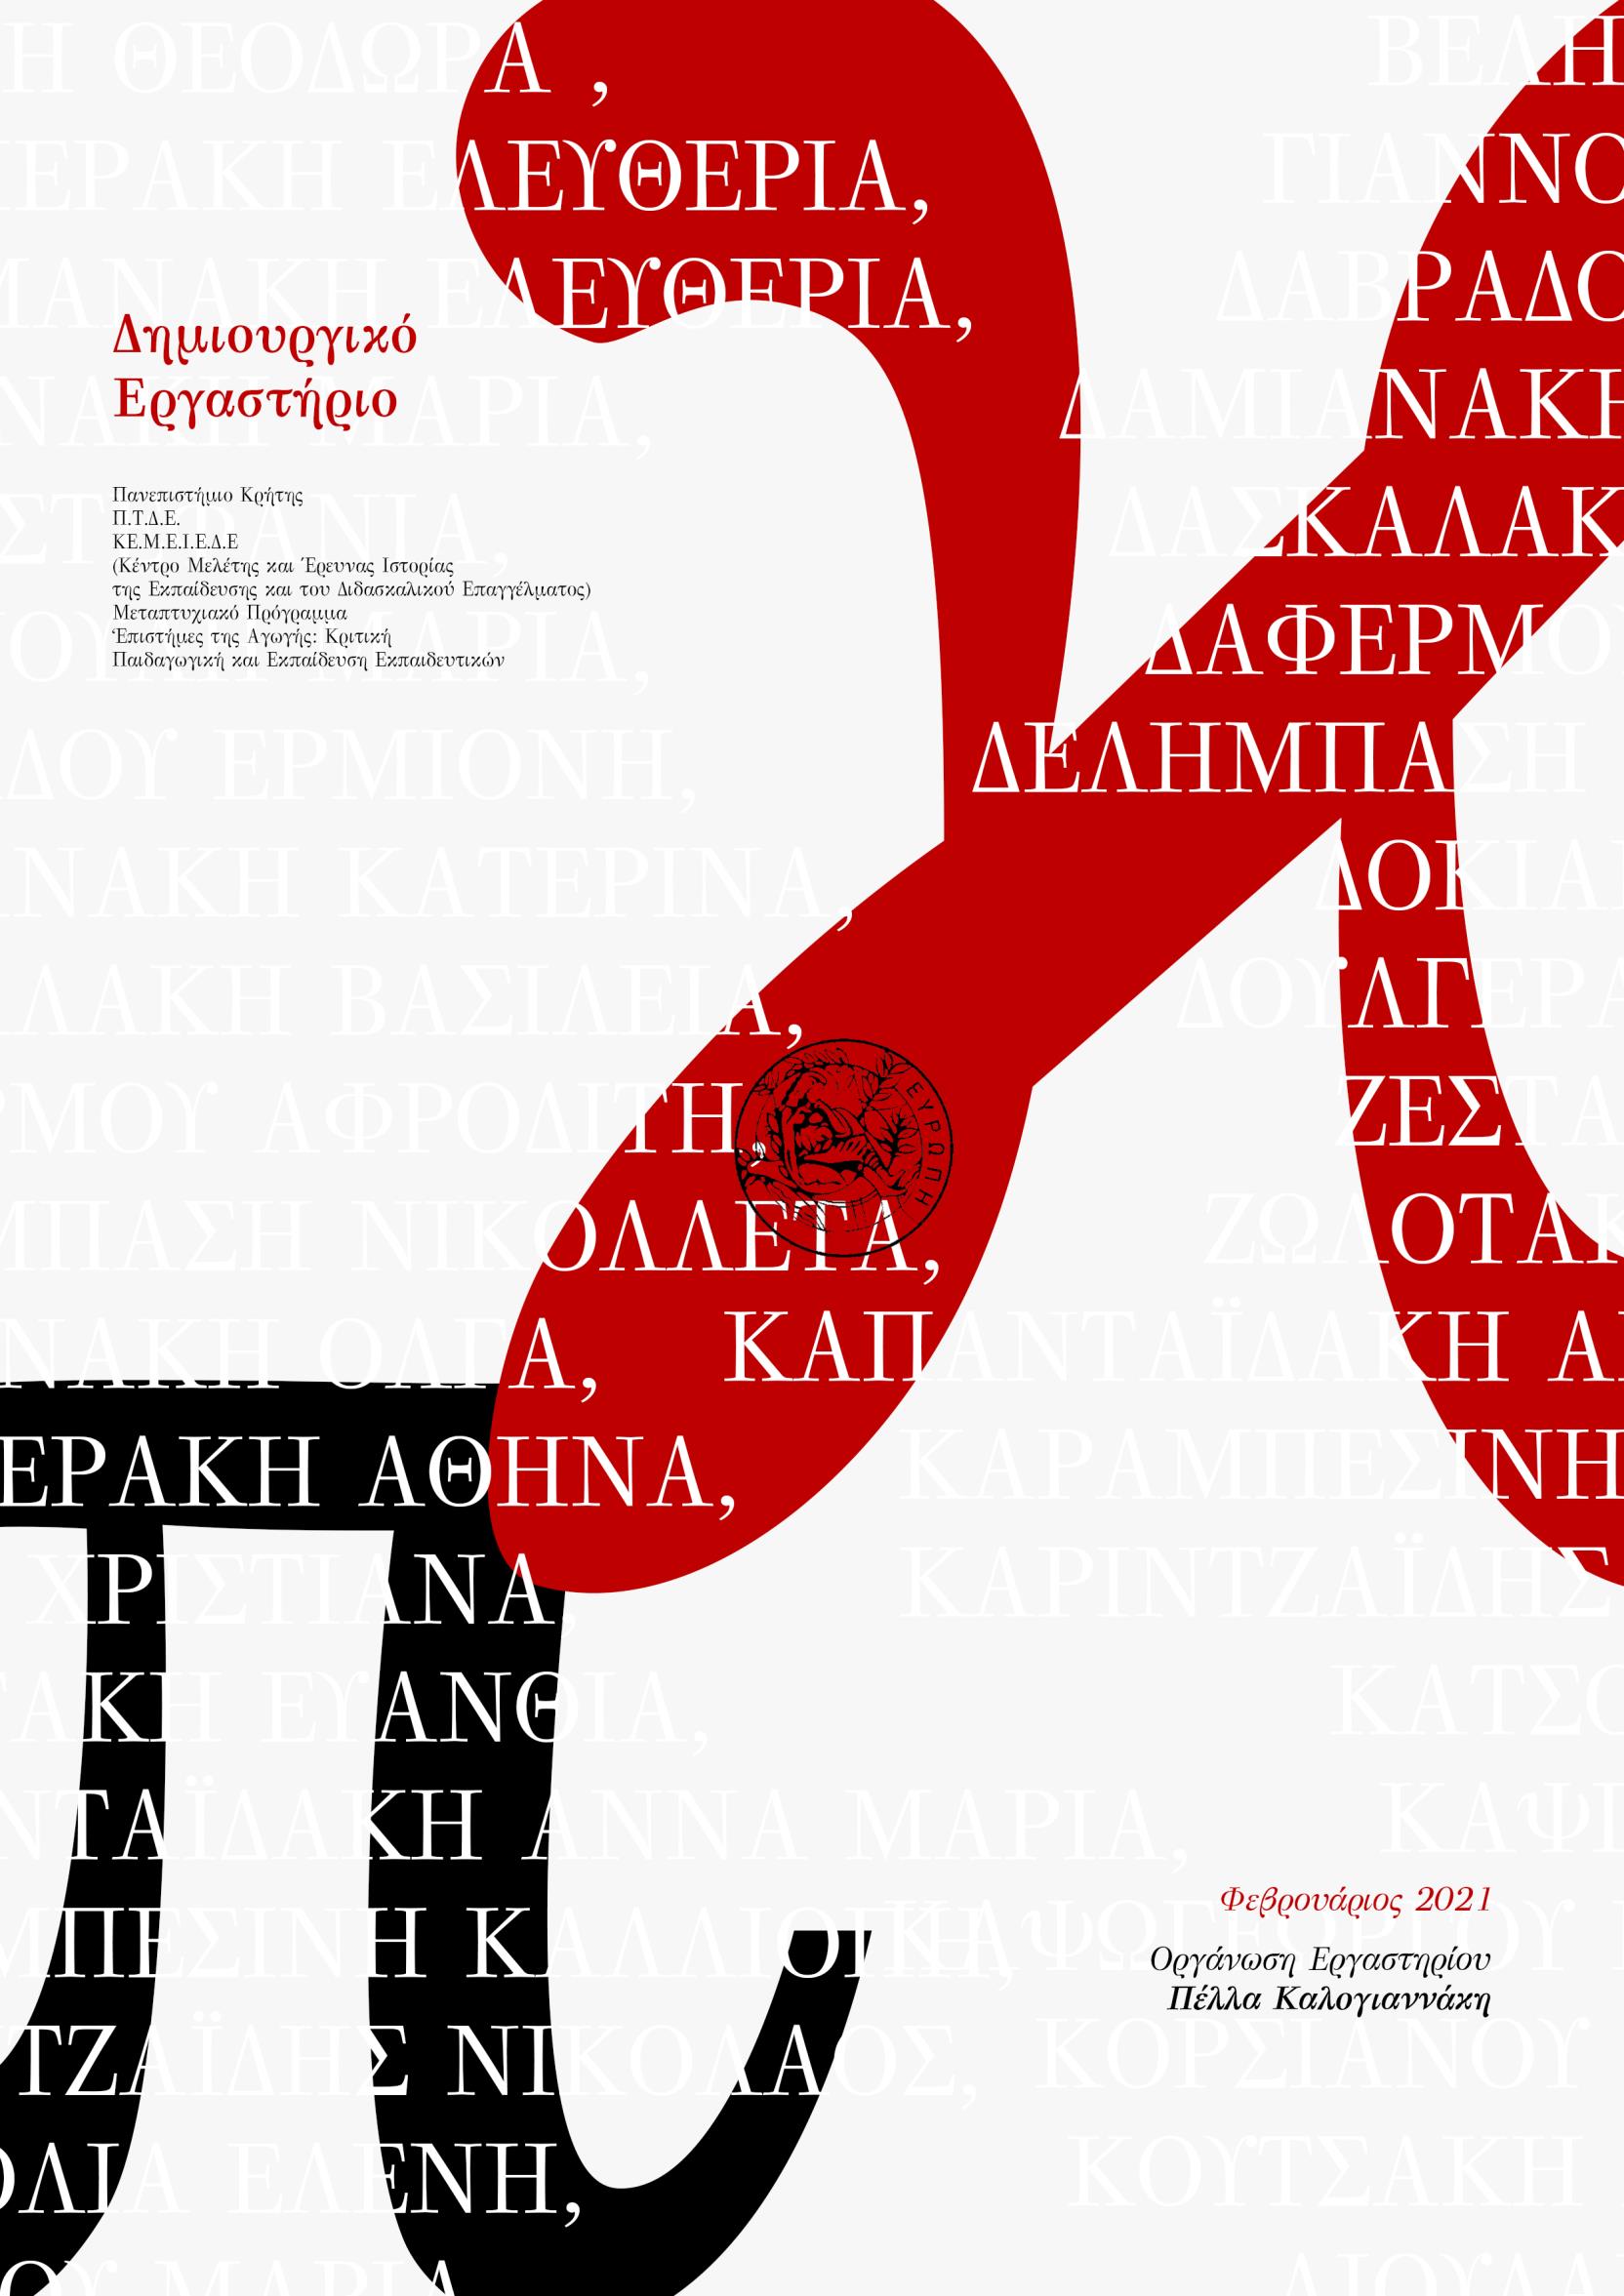 Δημιουργικό εργαστήριο (Υλοποίηση: Π. Καλογιαννάκη), Φεβρουάριος 2021, e-book